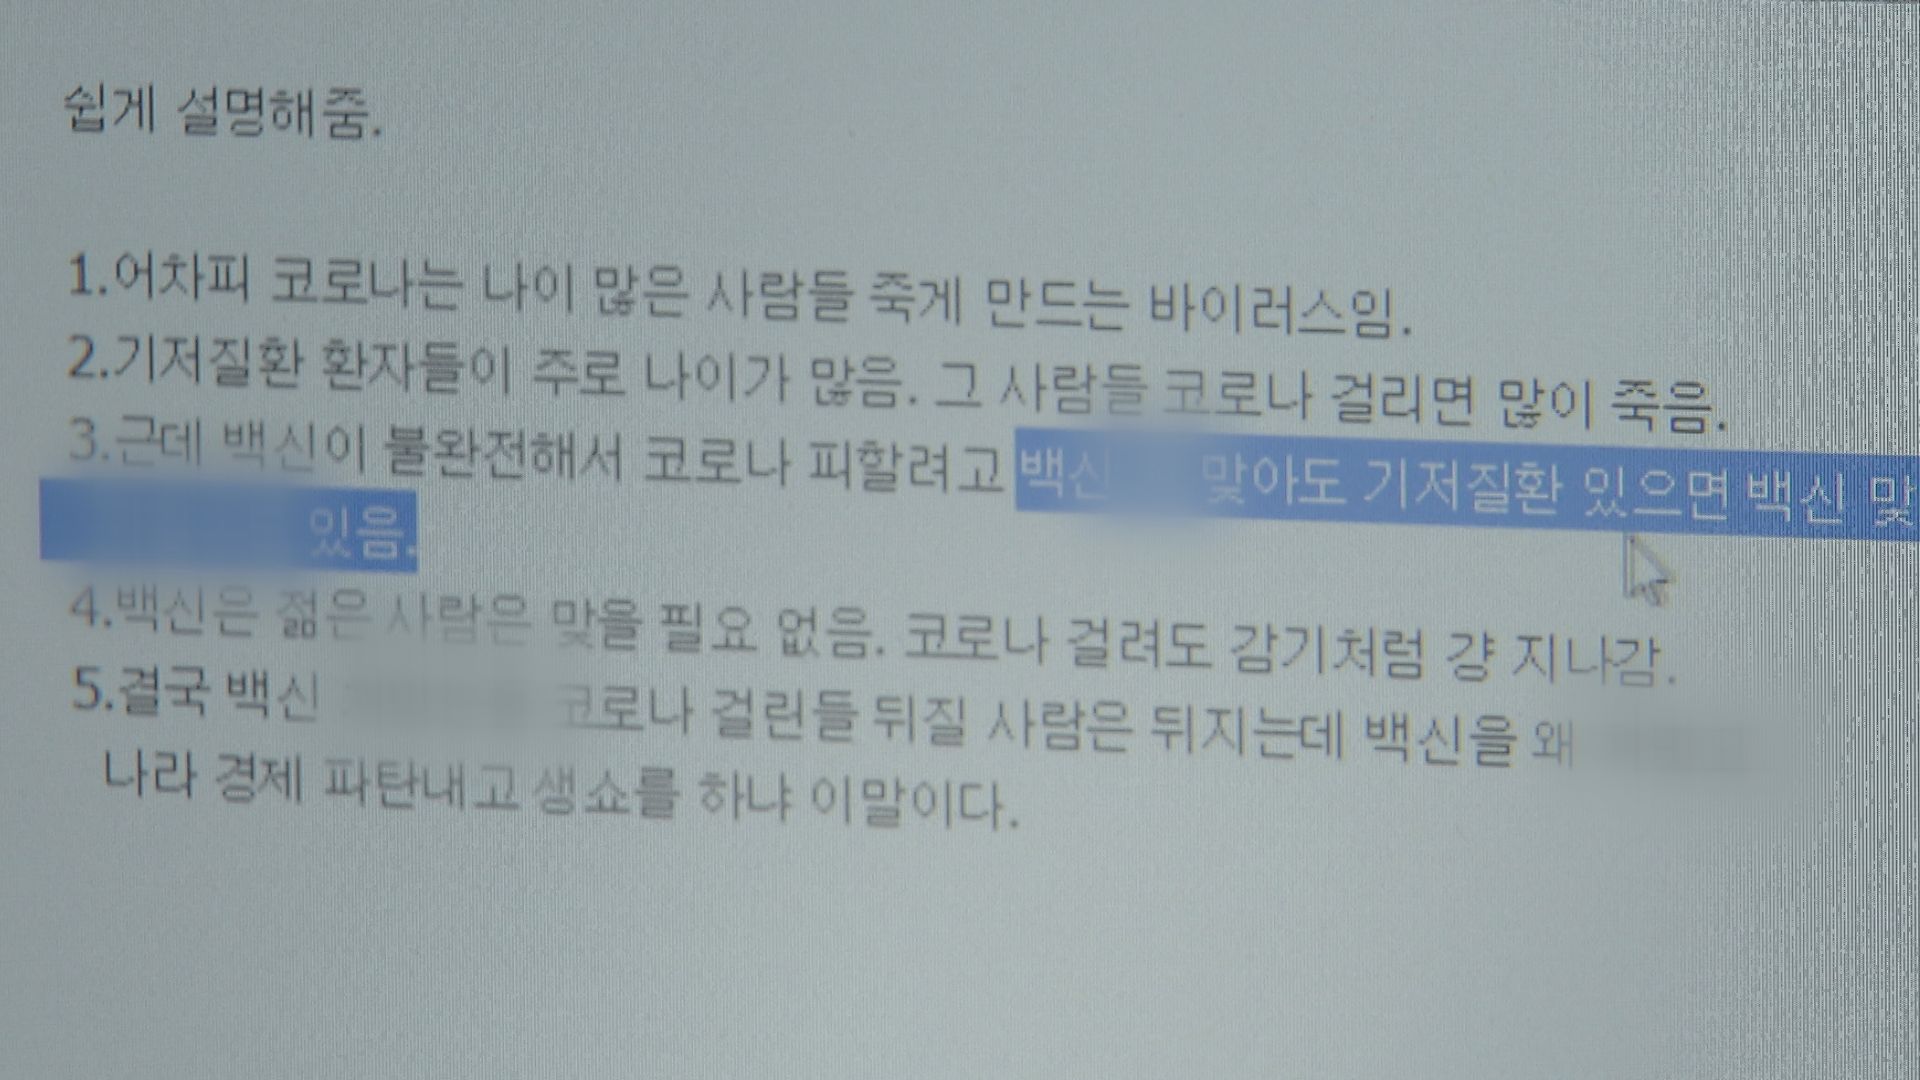  KBS 취재진이 한 인터넷 커뮤니티 게시판에서 발견한 ‘백신 가짜 뉴스’